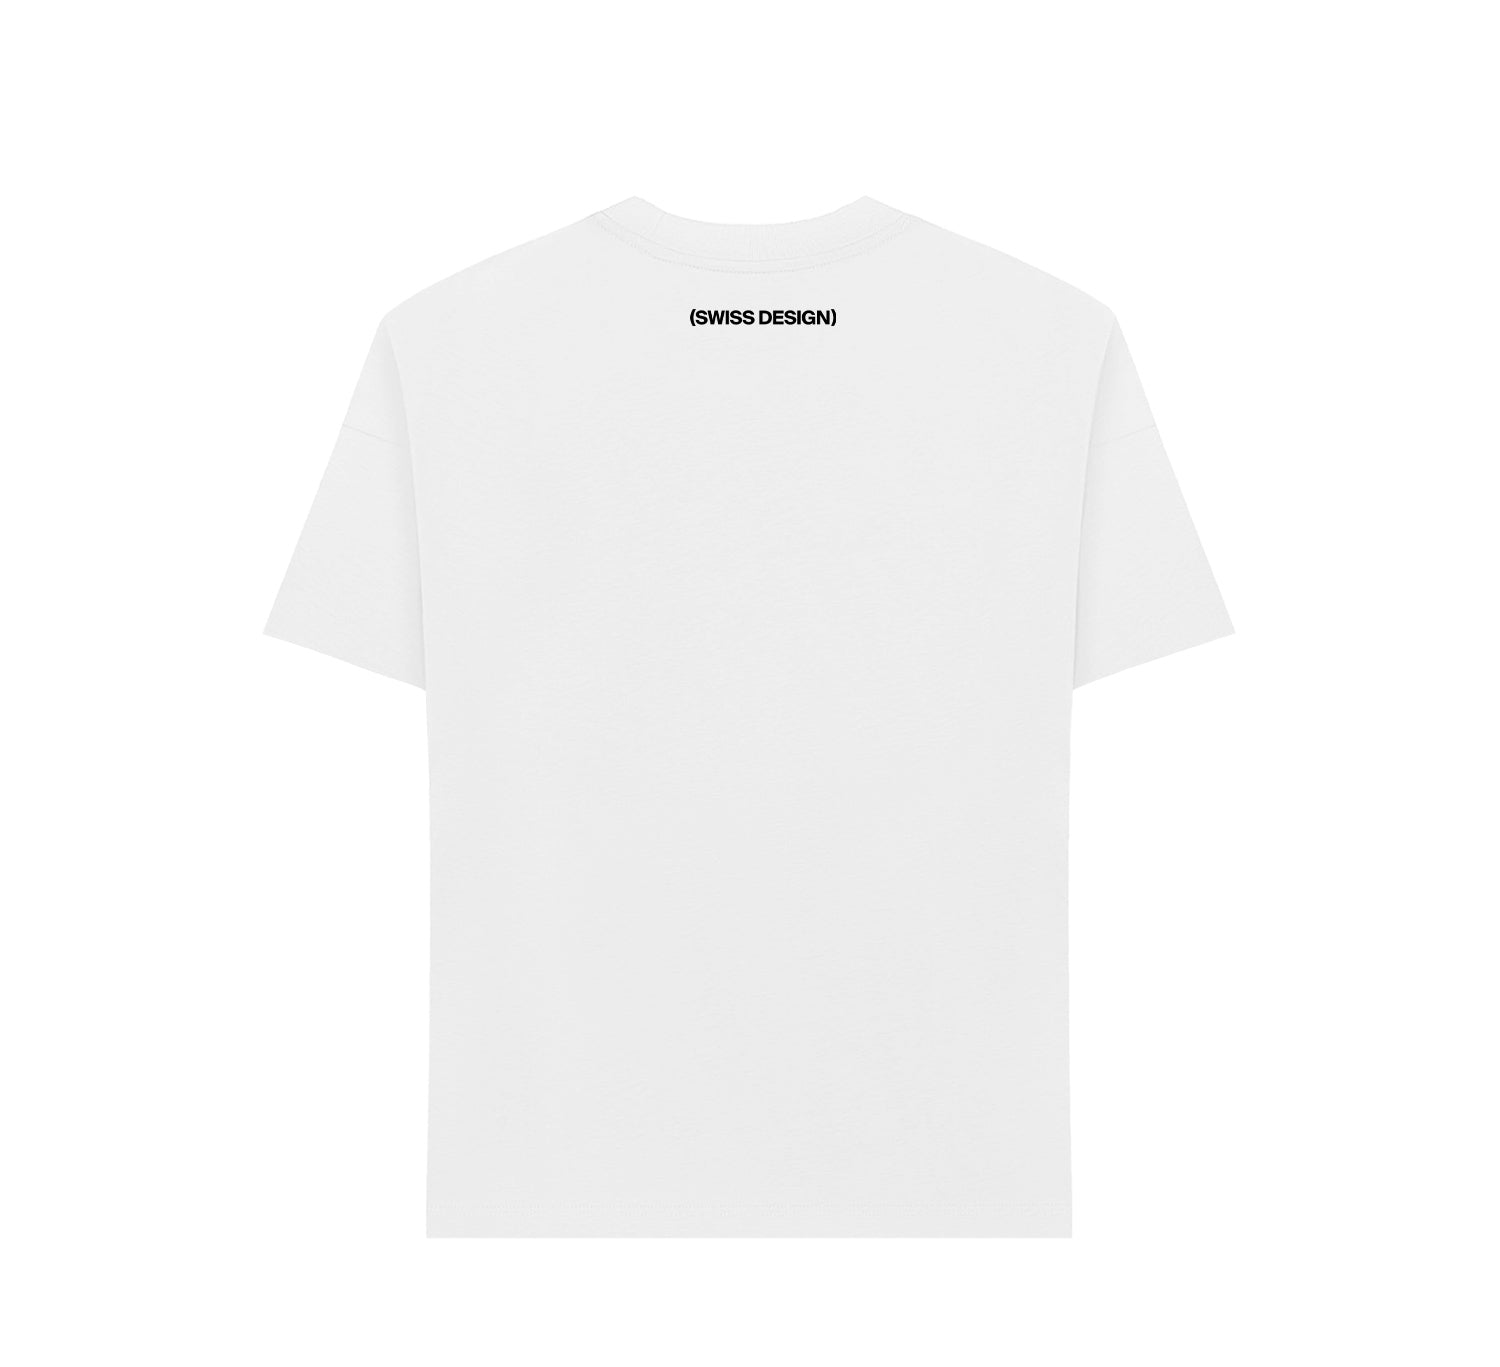 T-shirt Blanc Unisex (Relaxed Fit) – Waldstätten